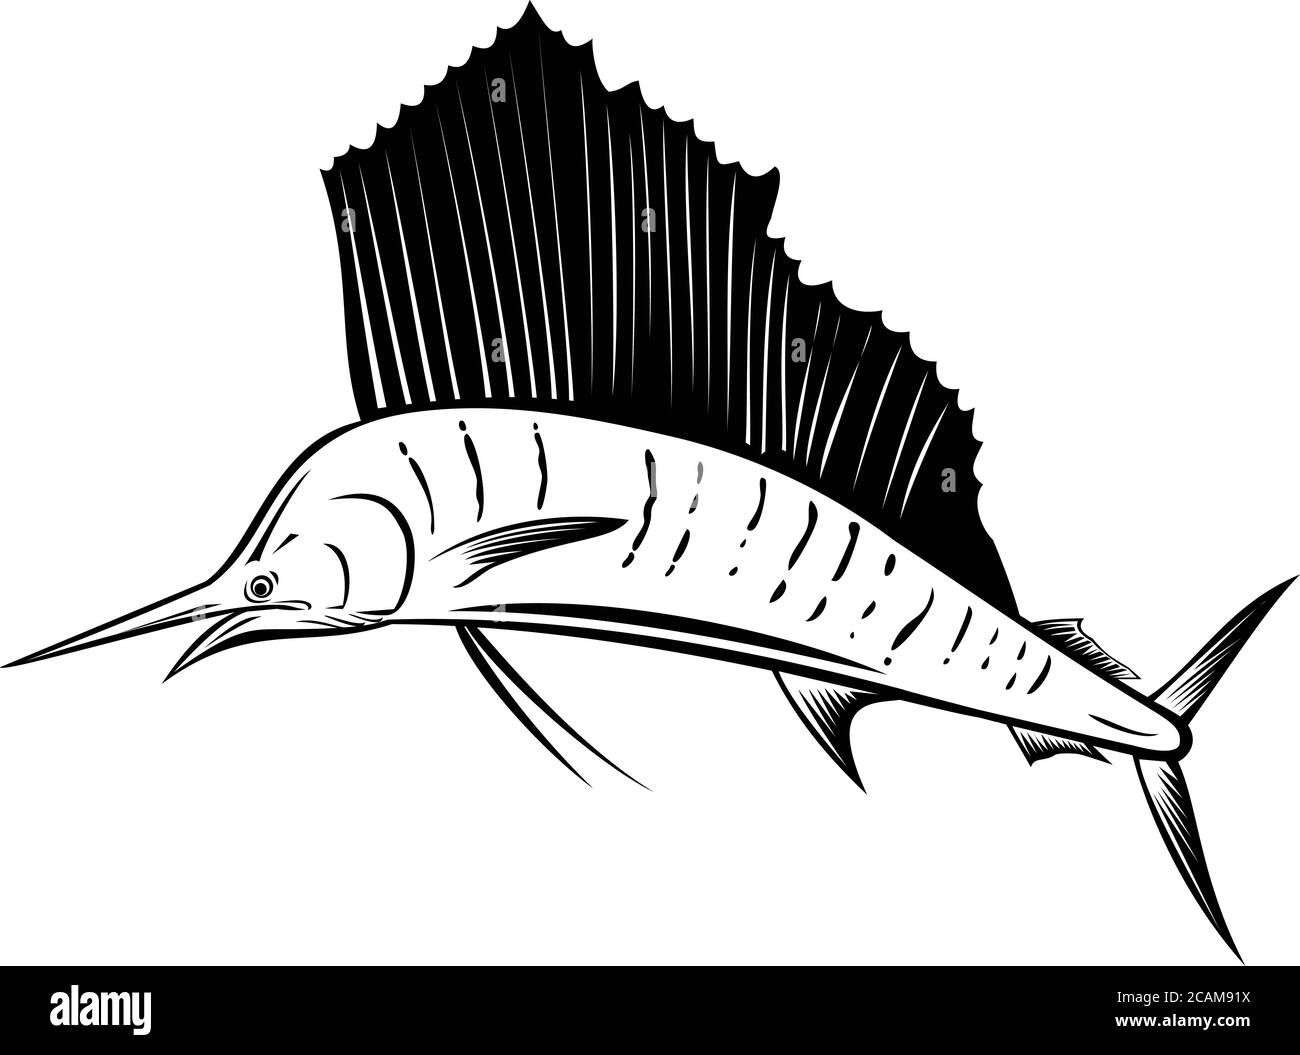 Retro Holzschnitt-Illustration eines Indo-Pazifik-Seemanns, ein Fisch der Gattung istiophorus von Billfish aus dem Indischen und Pazifischen Ozean, springen Stock Vektor